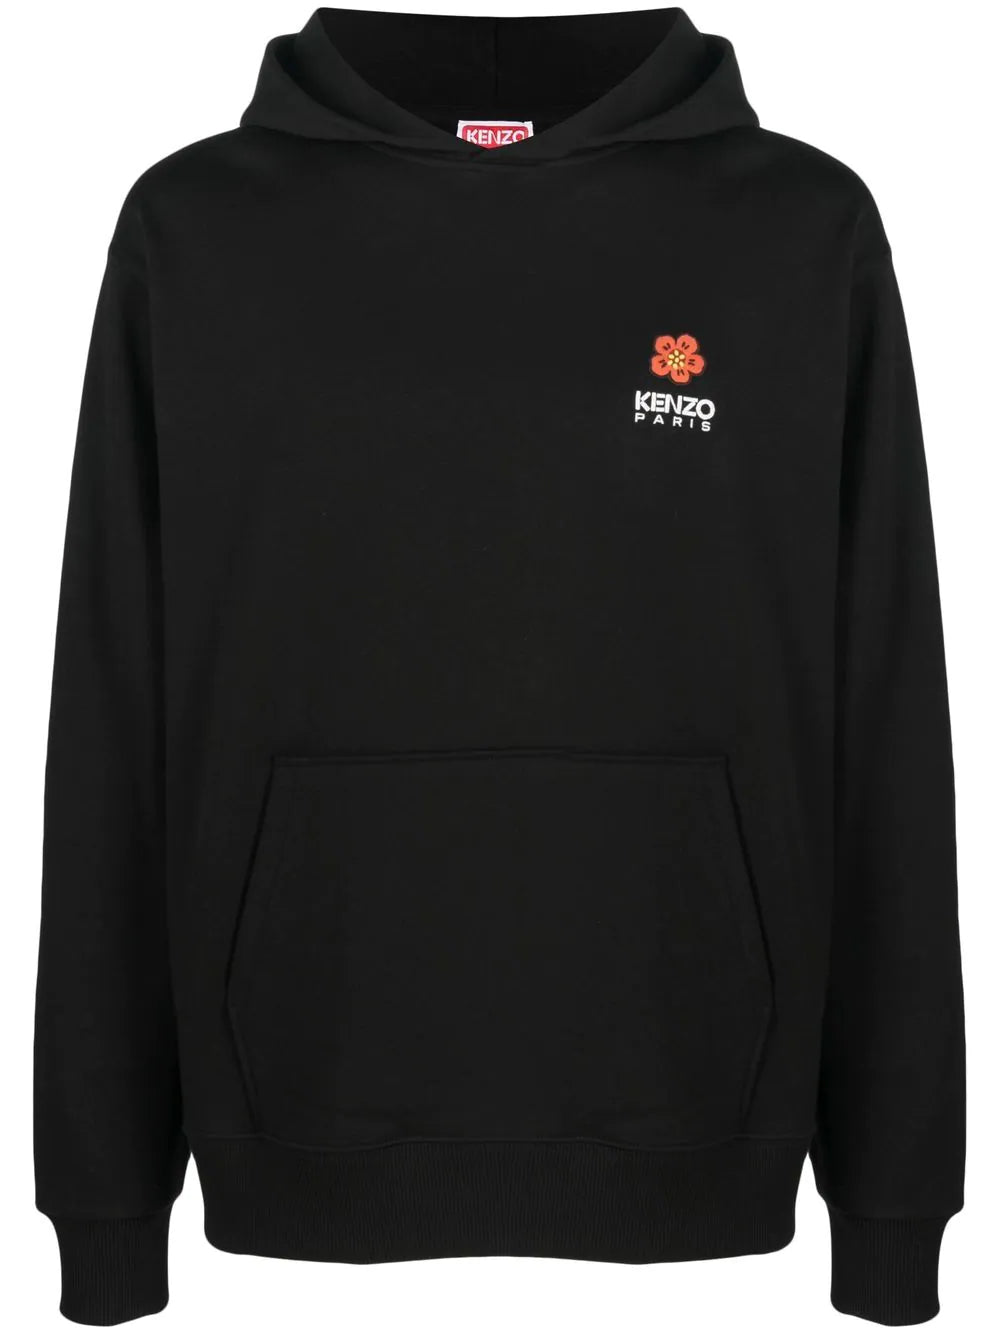 'BOKE FLOWER' crest hoodie sweatshirt